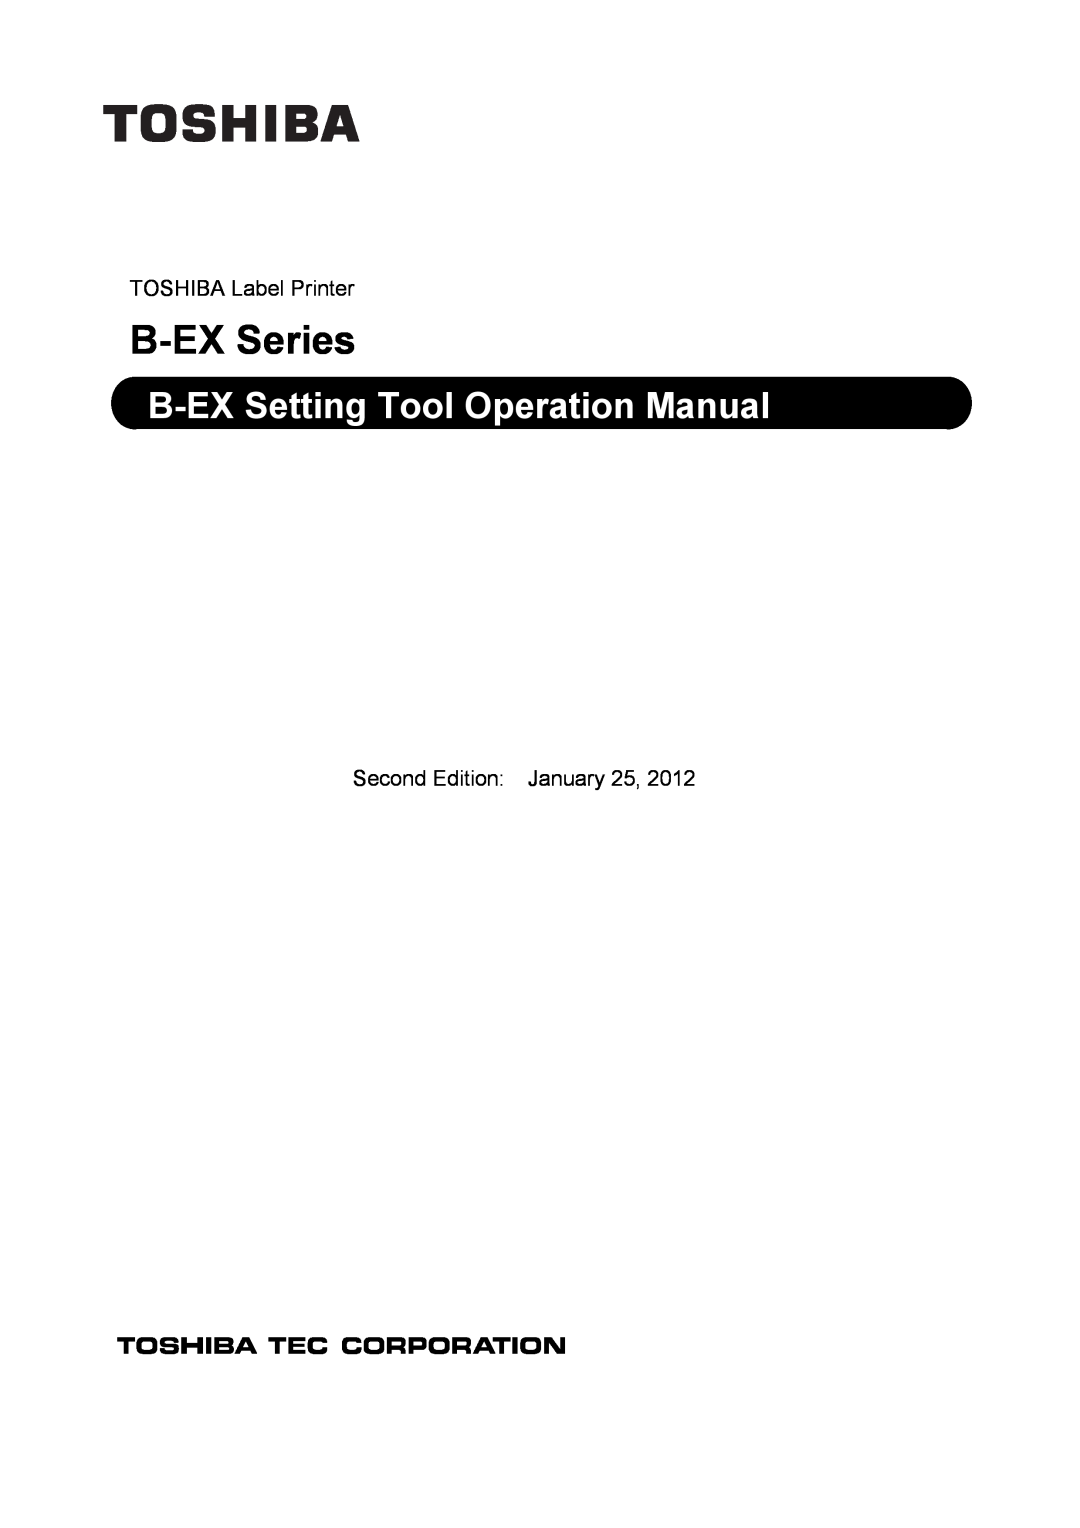 Toshiba operation manual B-EX Series, B-EX Setting Tool Operation Manual, TOSHIBA Label Printer 